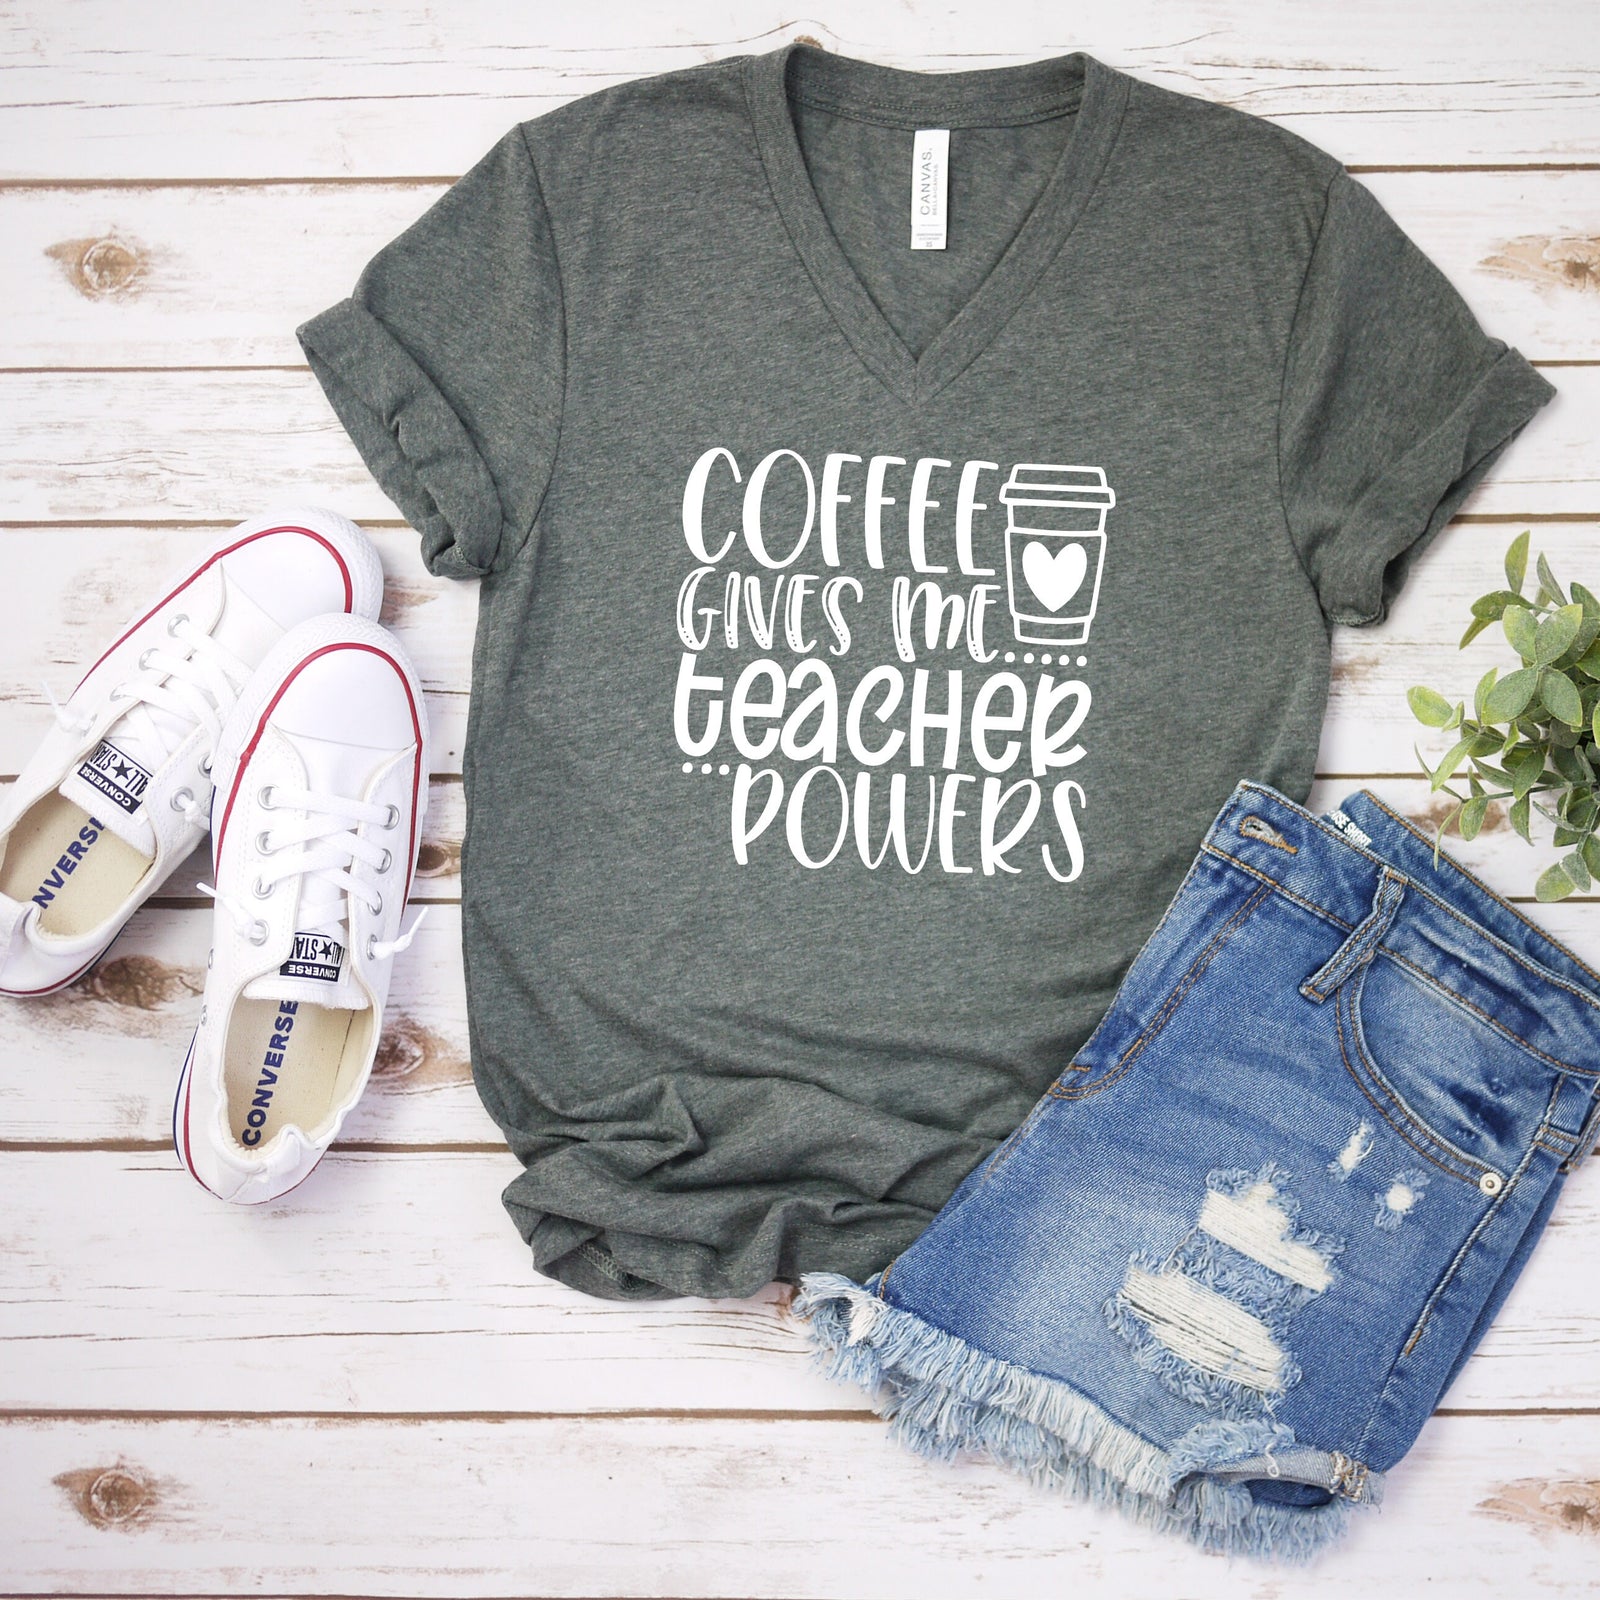 Coffee Gives Me Super Powers - Teacher Shirts - Favorite Teacher T Shirt